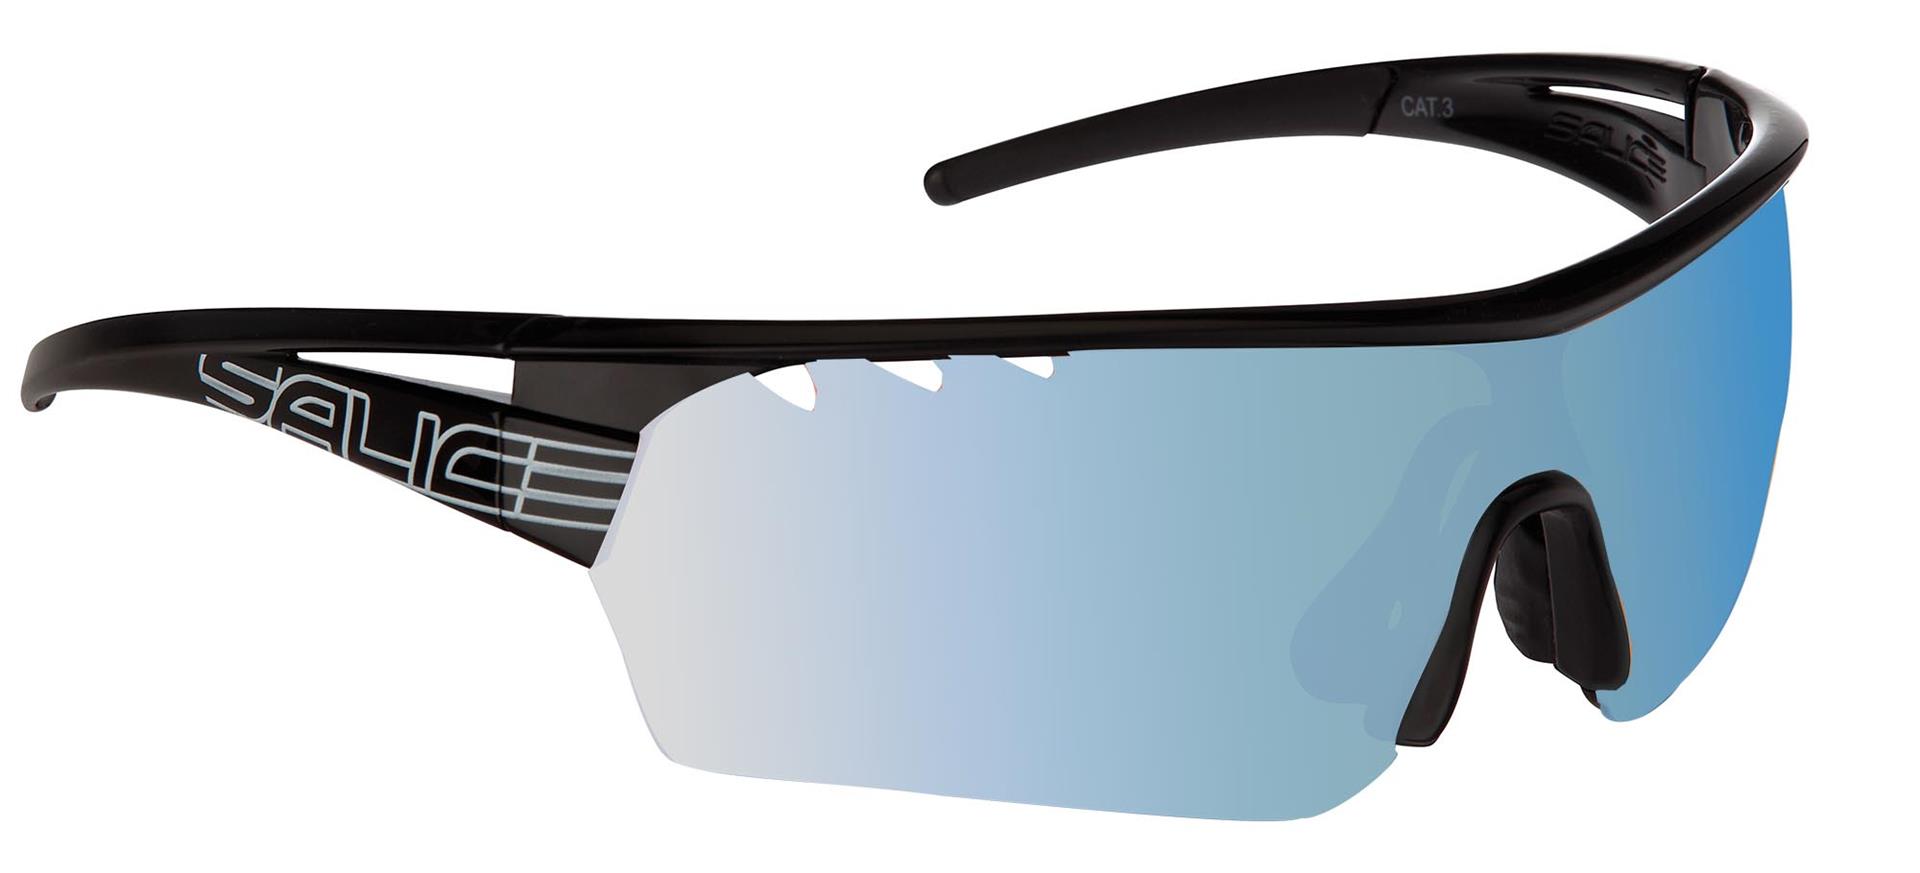 Salice 006RWX Sportiniai akiniai nuo saulės, juodi